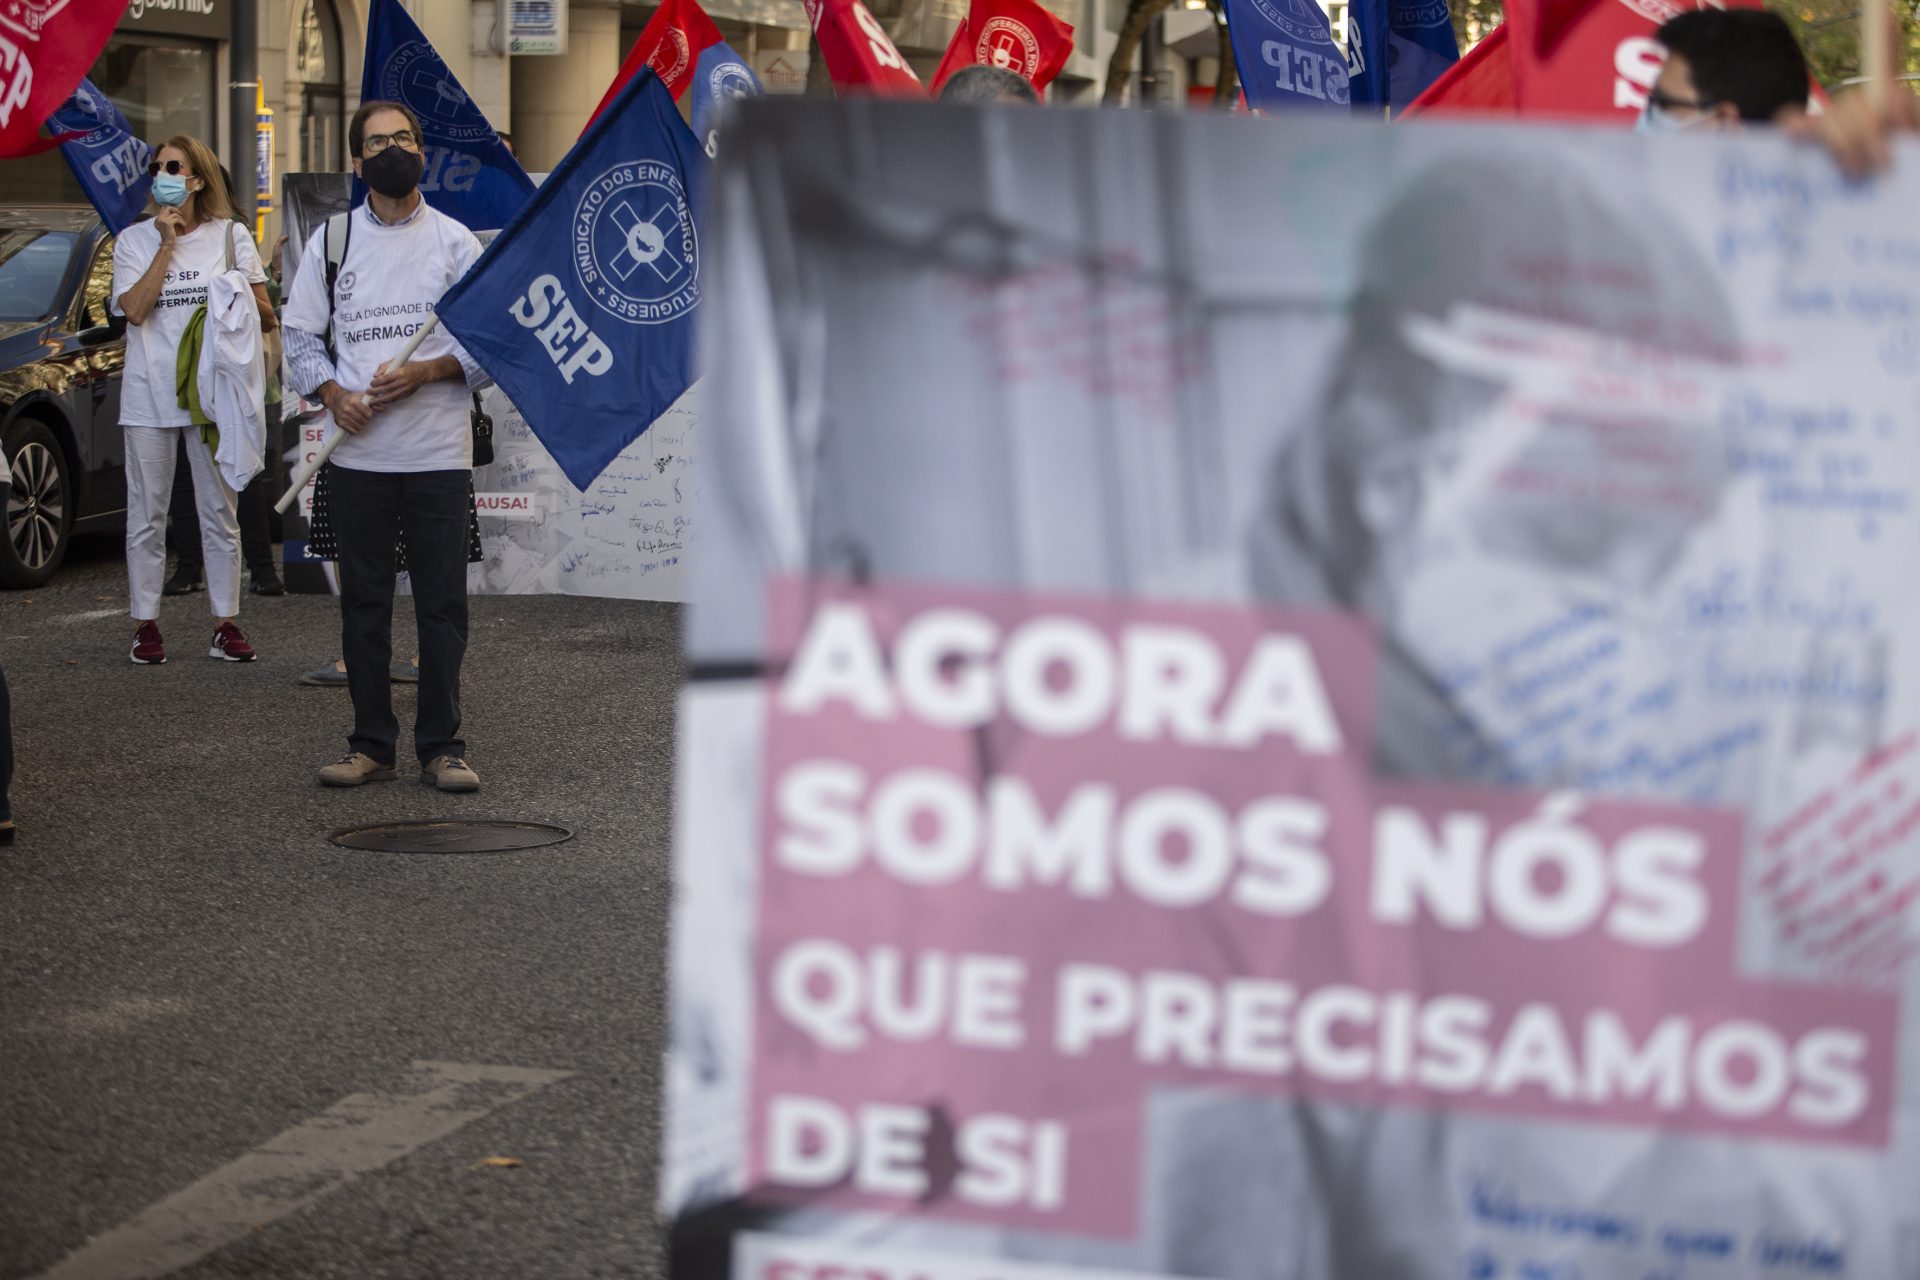 Sindicato dos Enfermeiros Portugueses marca greve para 15 de março